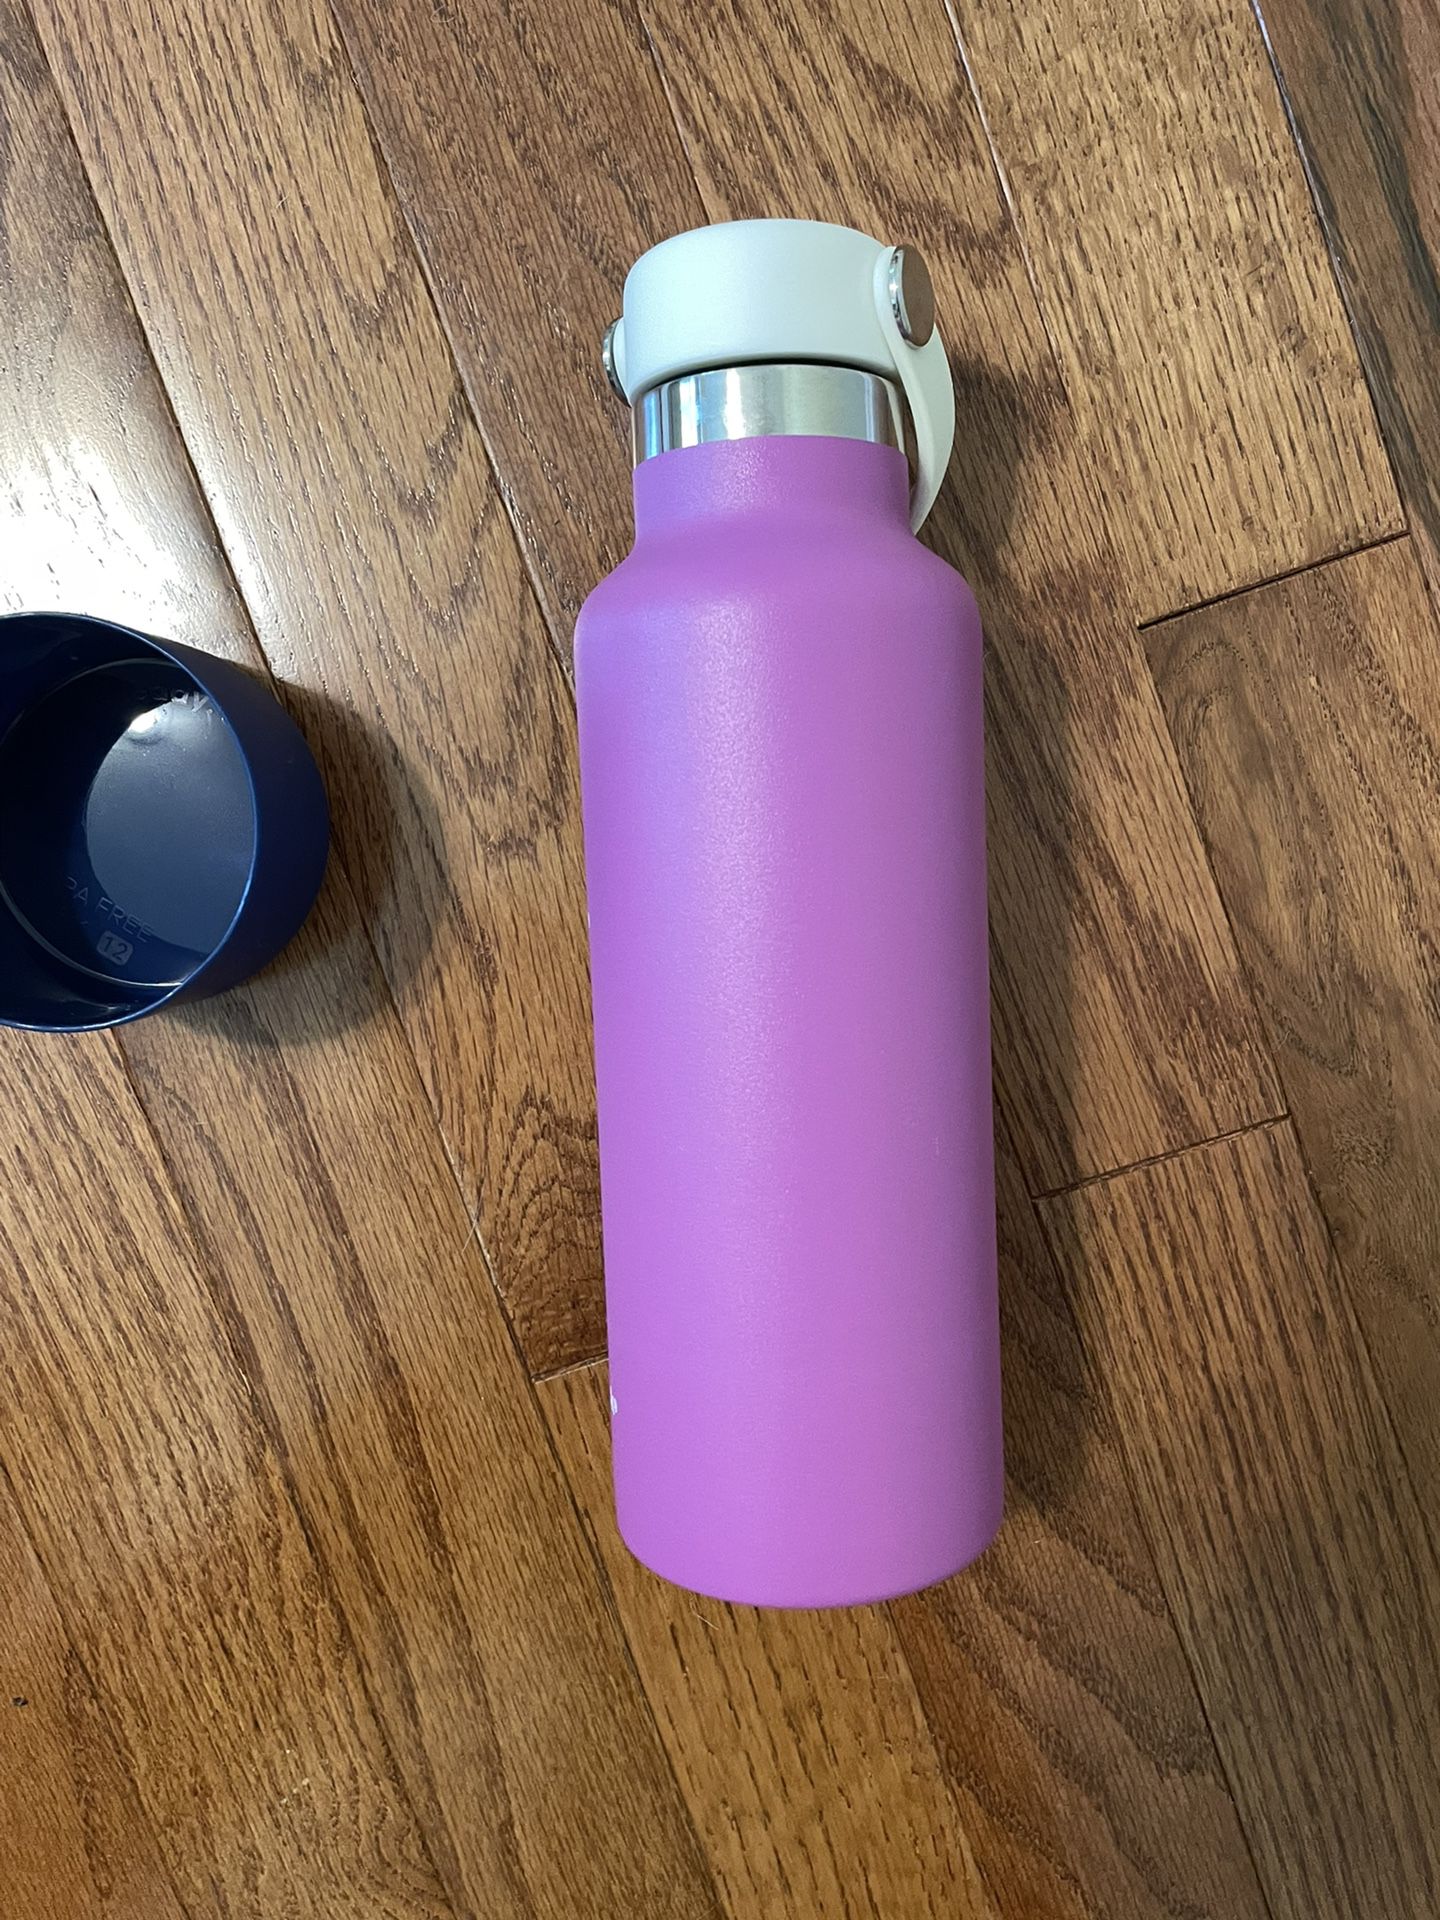 Bubba Water Bottle for Sale in Apopka, FL - OfferUp